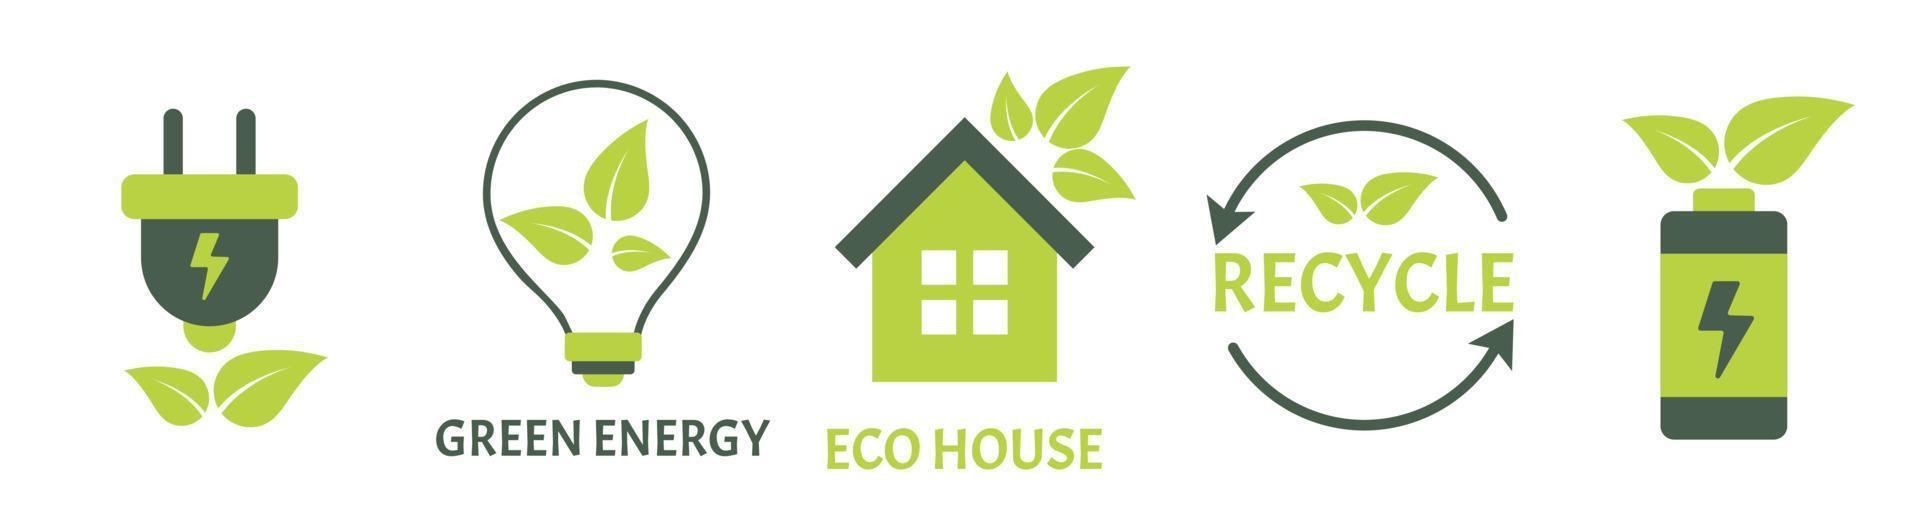 ensemble d'illustration vectorielle d'énergie renouvelable d'icône eco symboles respectueux de l'environnement vecteur